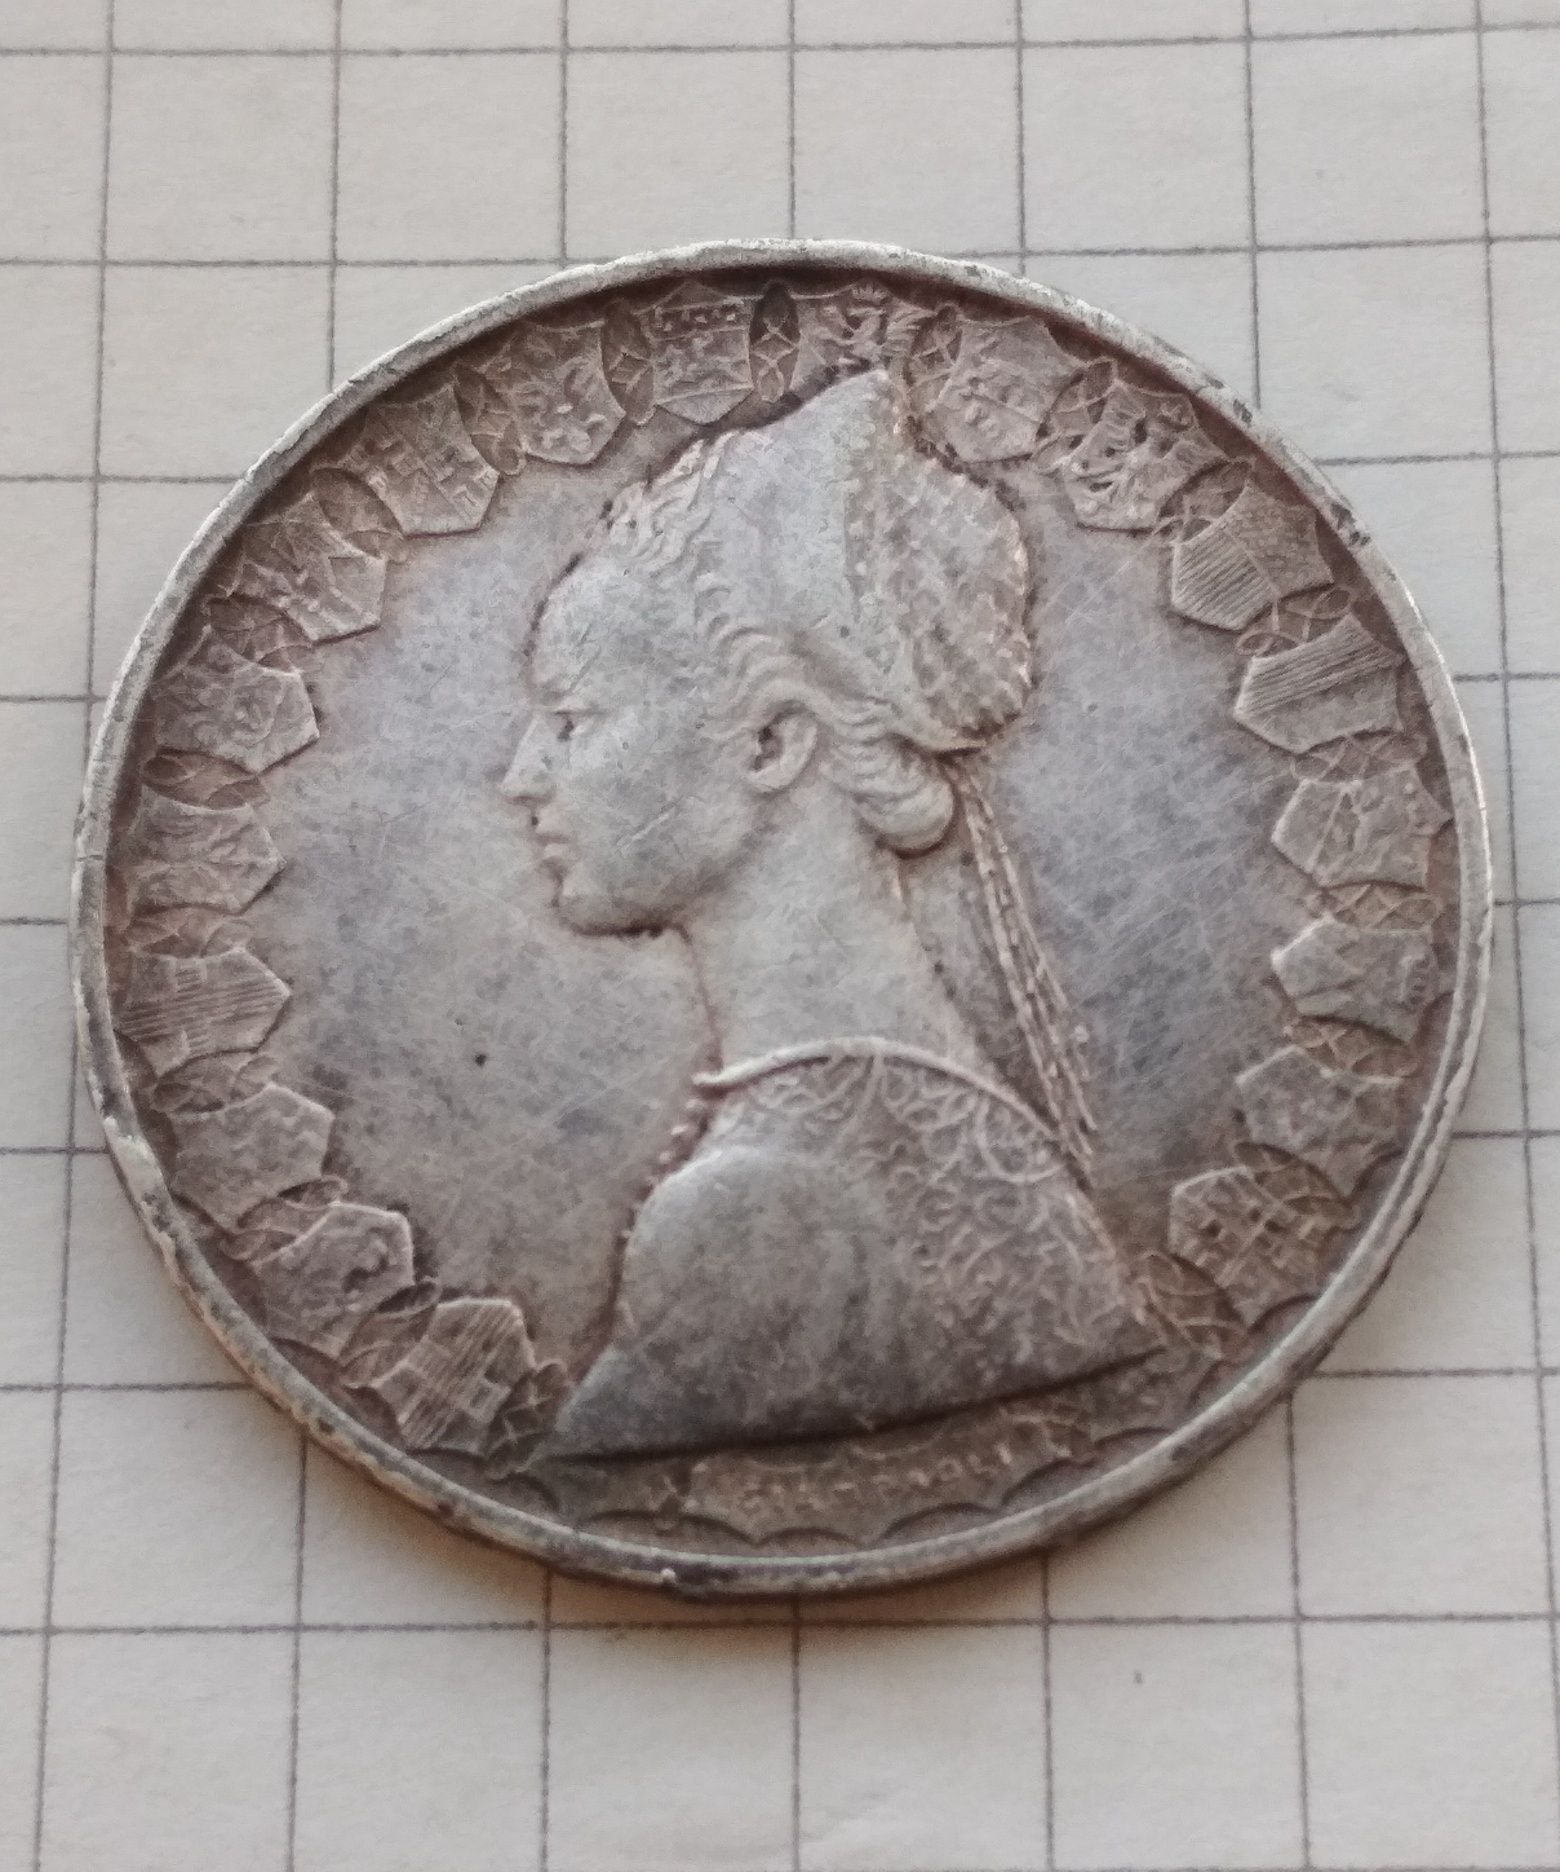 Монета 500 итальянских лир 1958г , серебро.